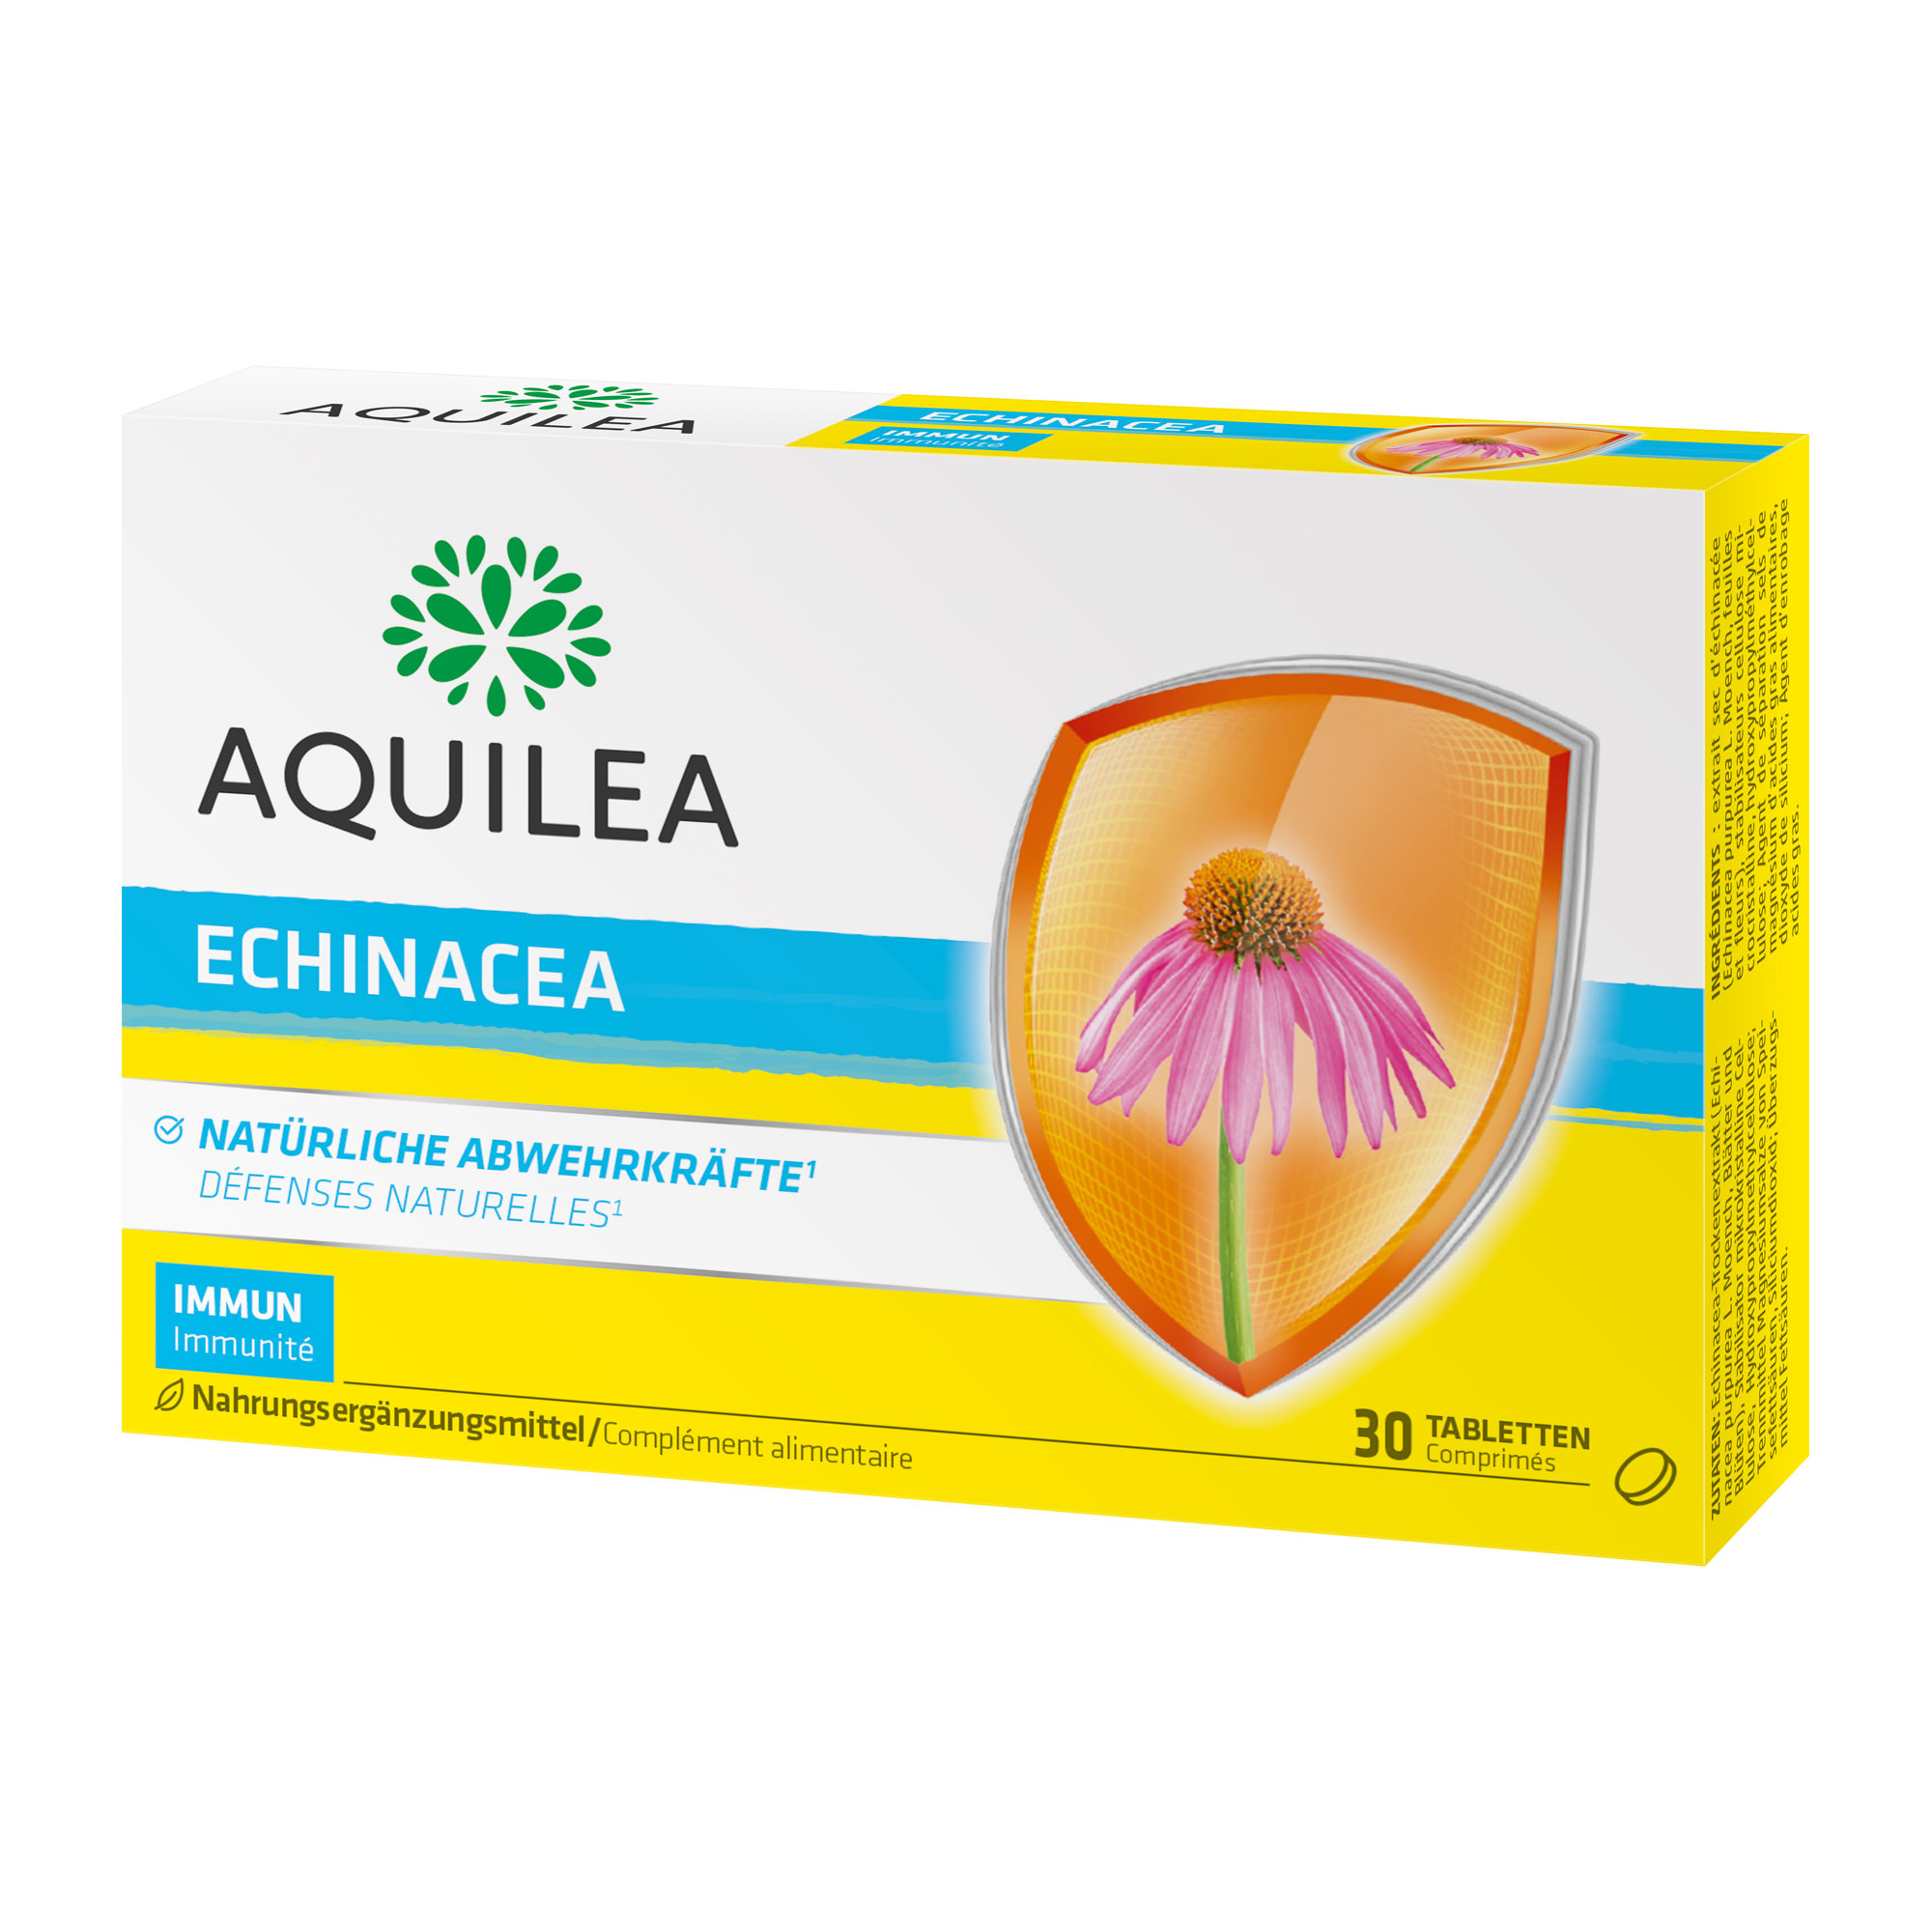 Nahrungsergänzungsmittel mit Echinacea-Extrakt.